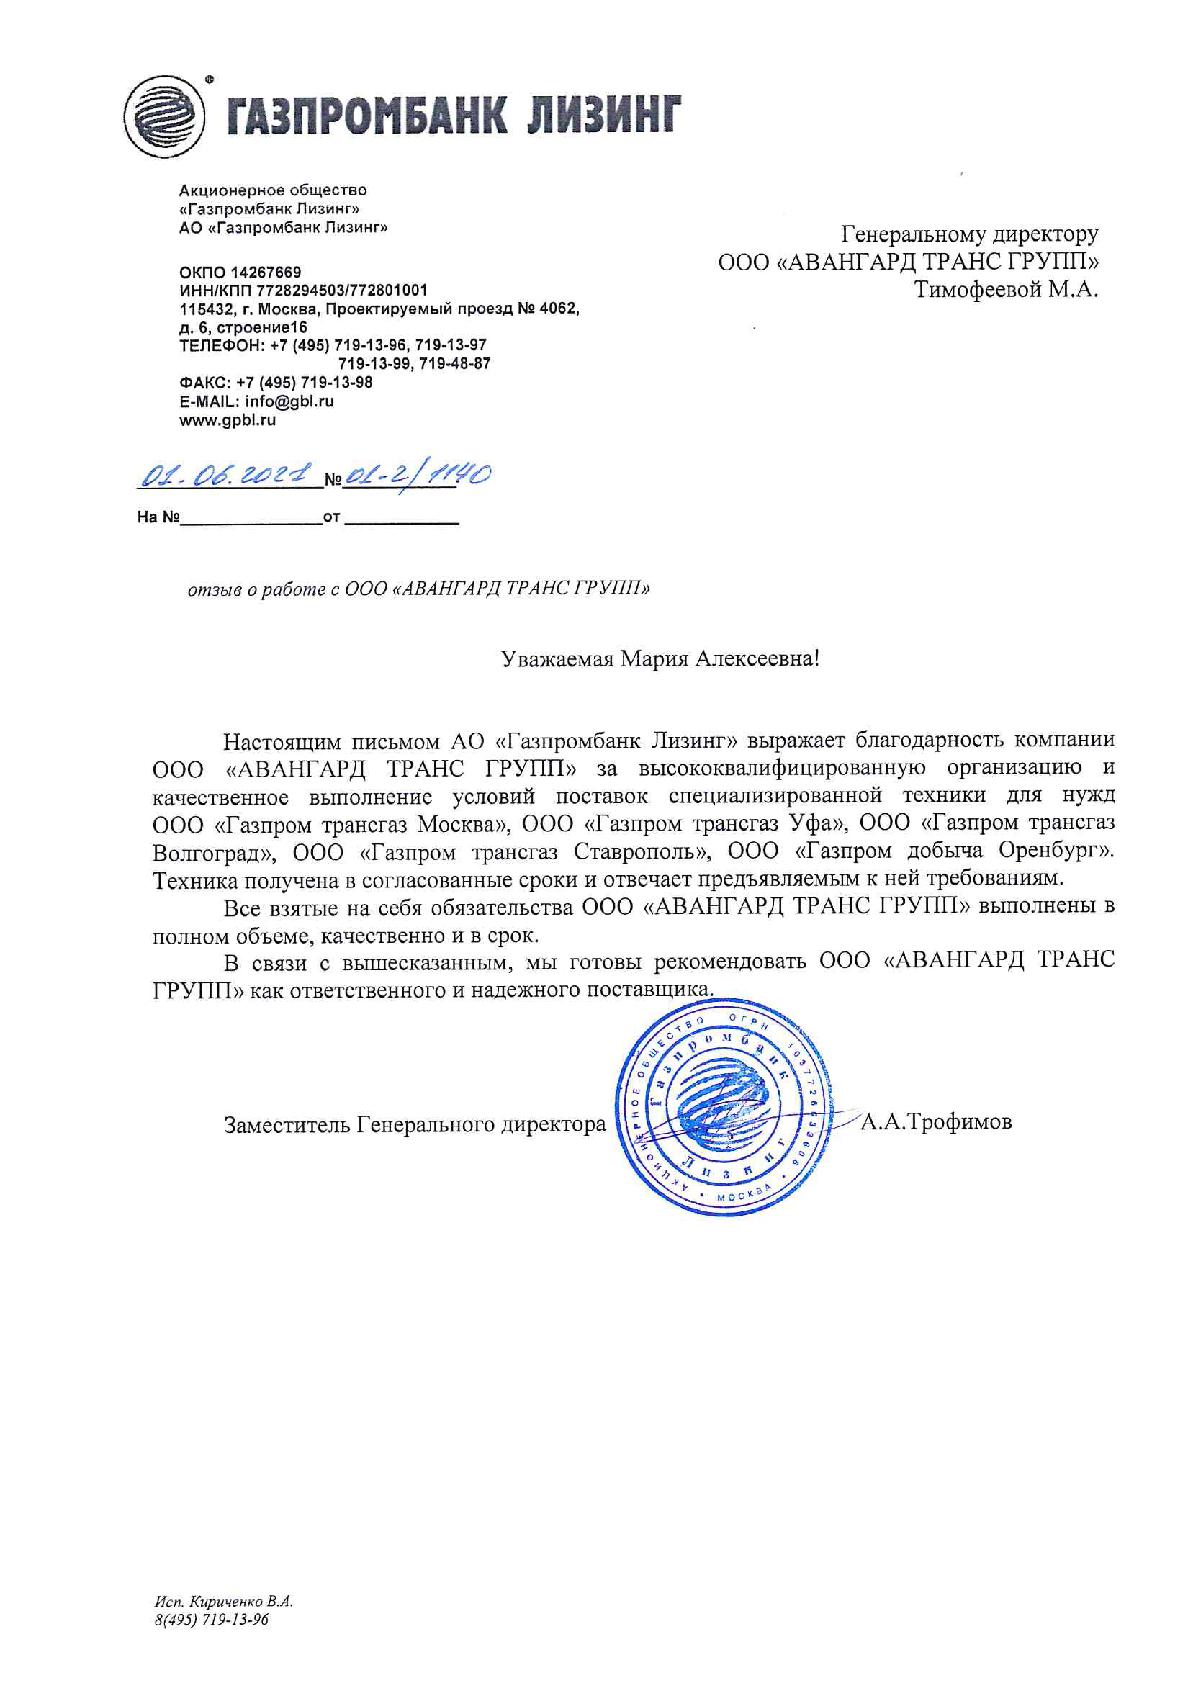 Отзыв по исполненным Договорам от 01.06.2021г. от АО Газпромбанк Лизинг